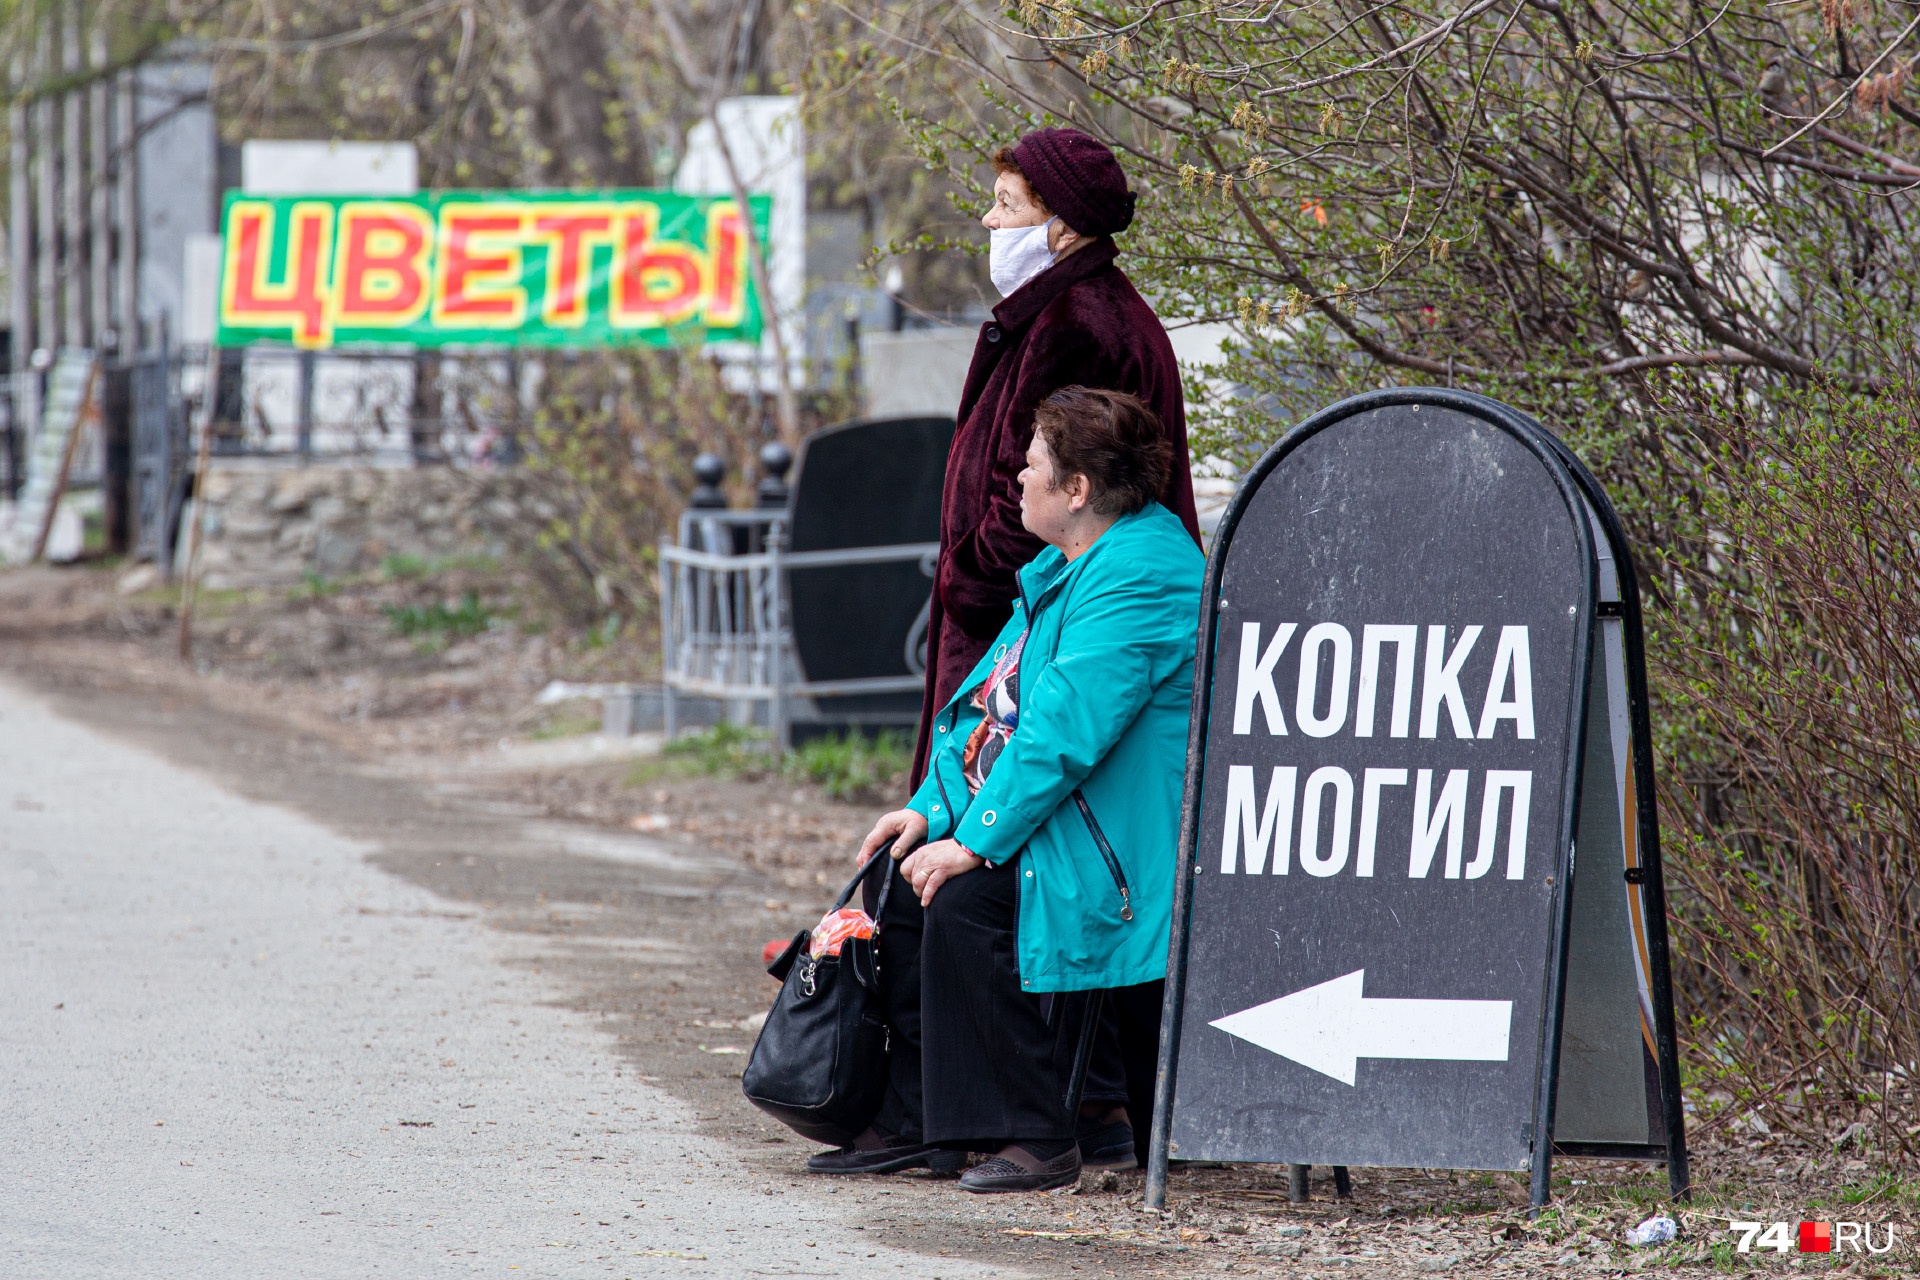 Формально в Челябинске кладбища открыты только для погребения